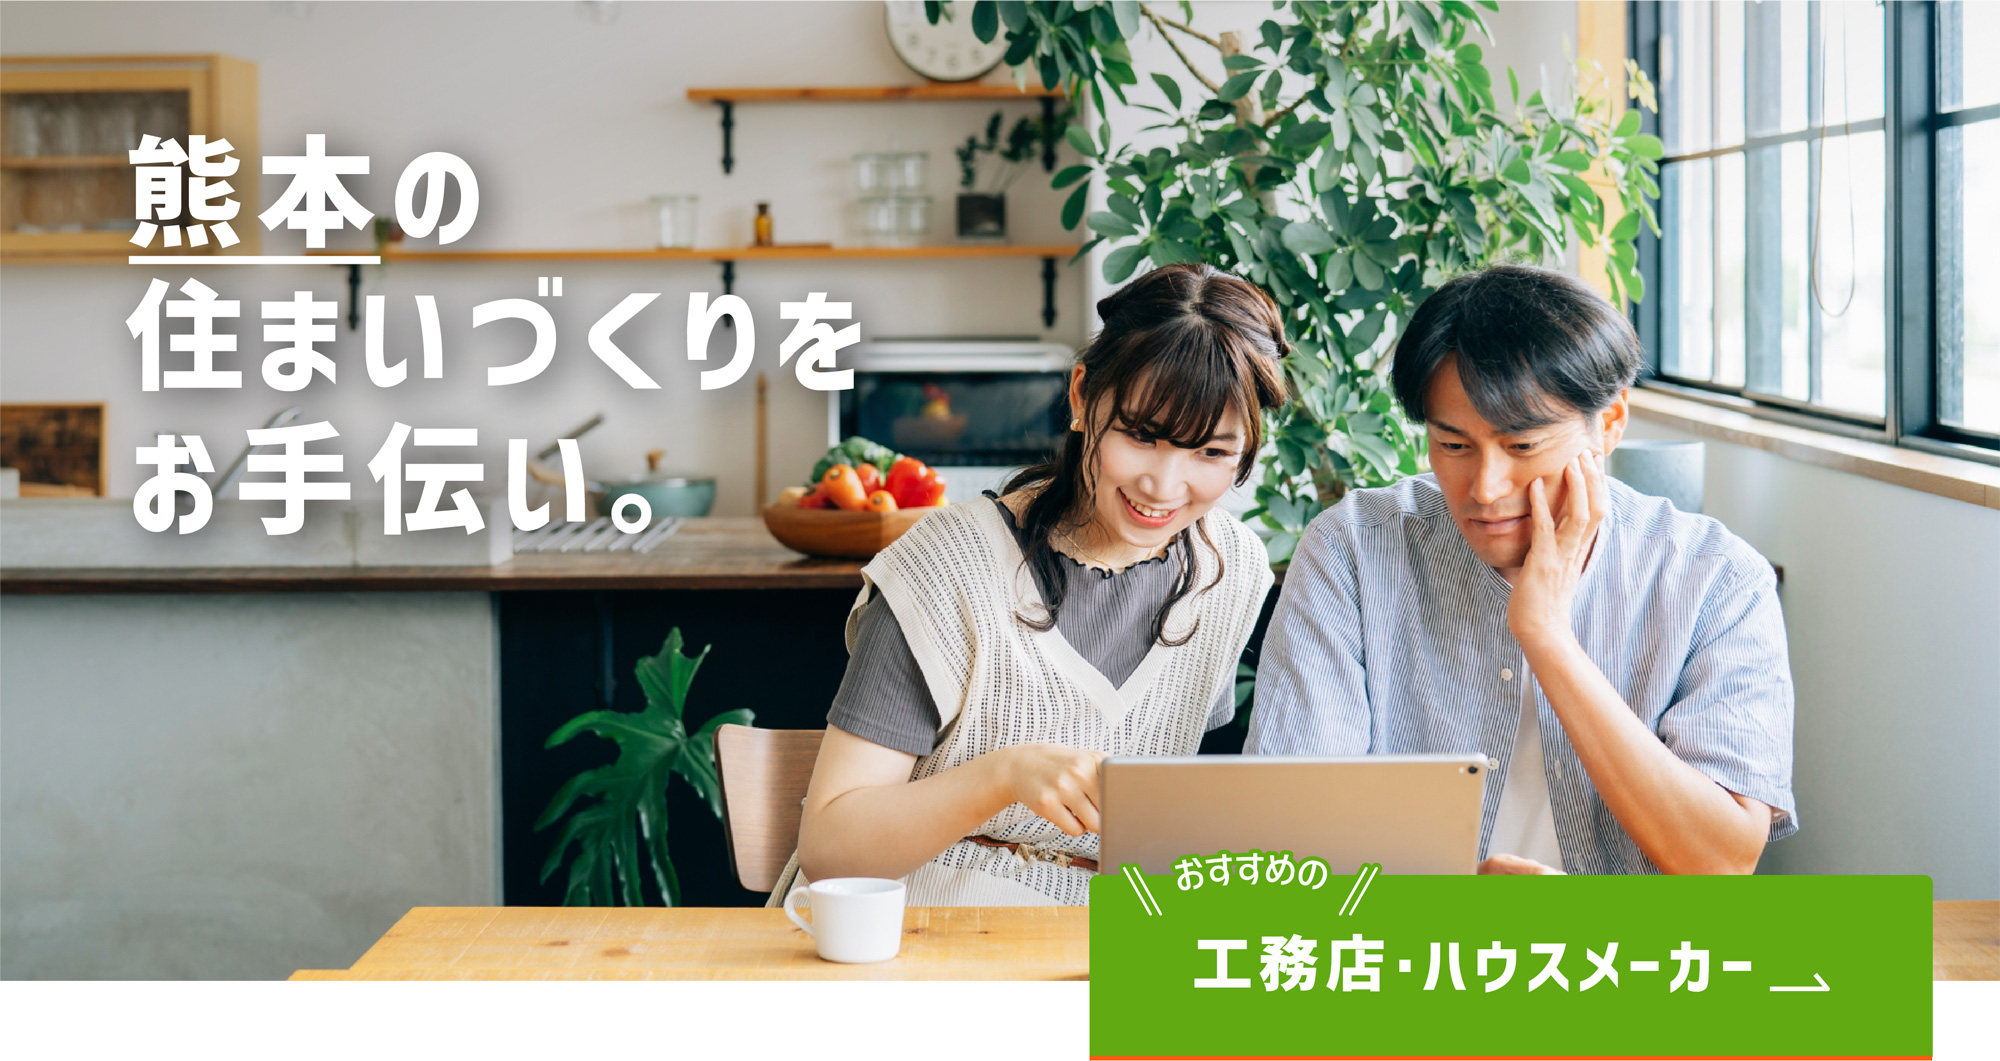 熊本ではじめて家を建てる人のための家づくり応援サイト「タテルヤ熊本」